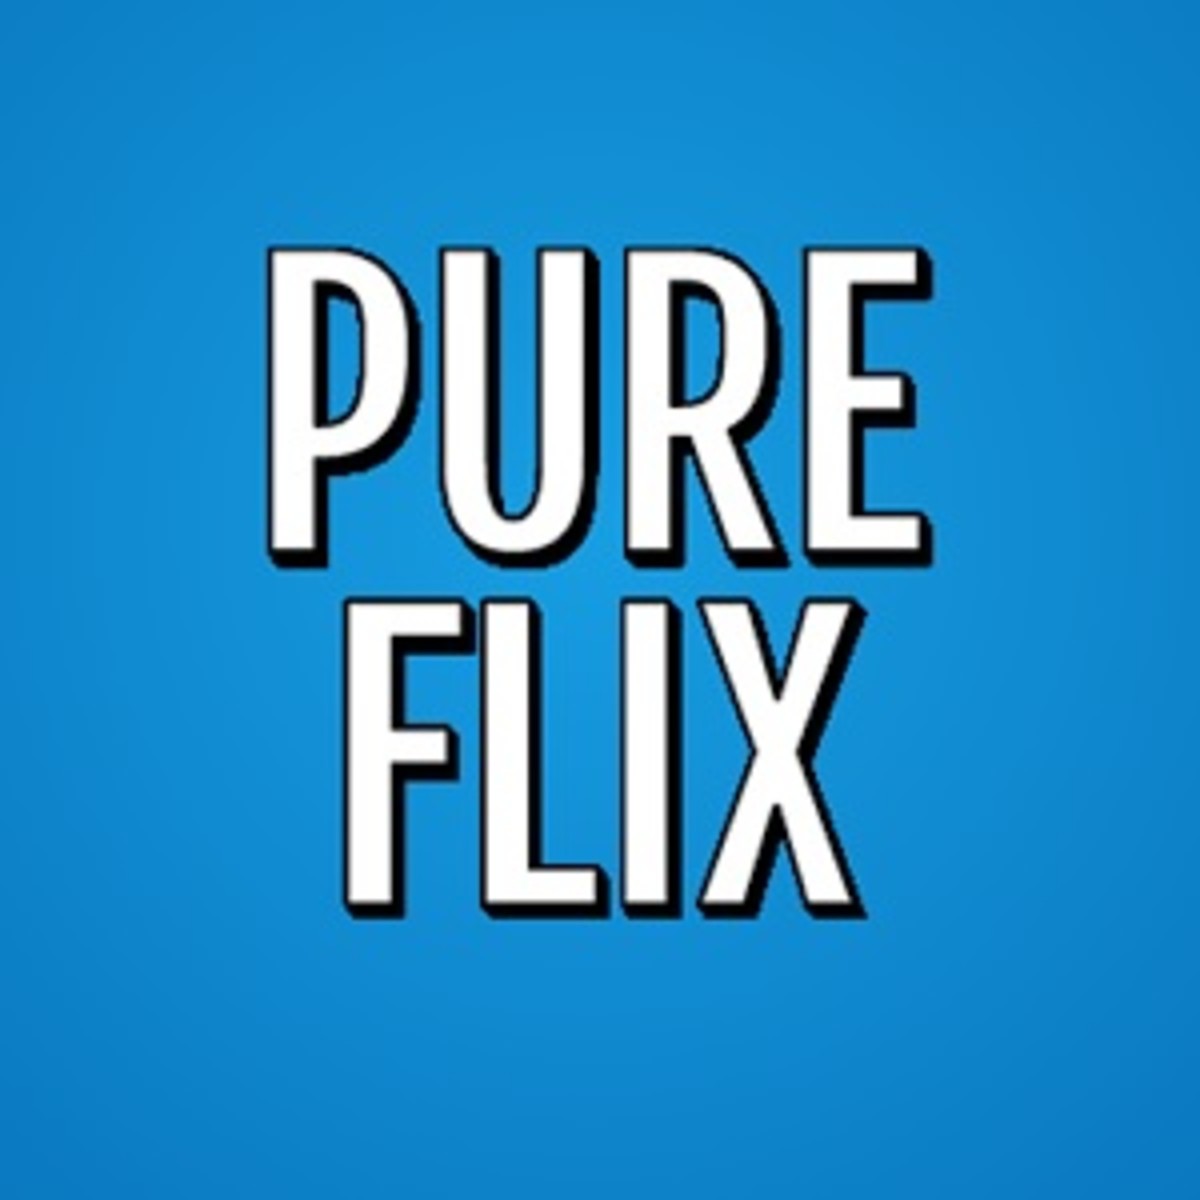 Pure Flix